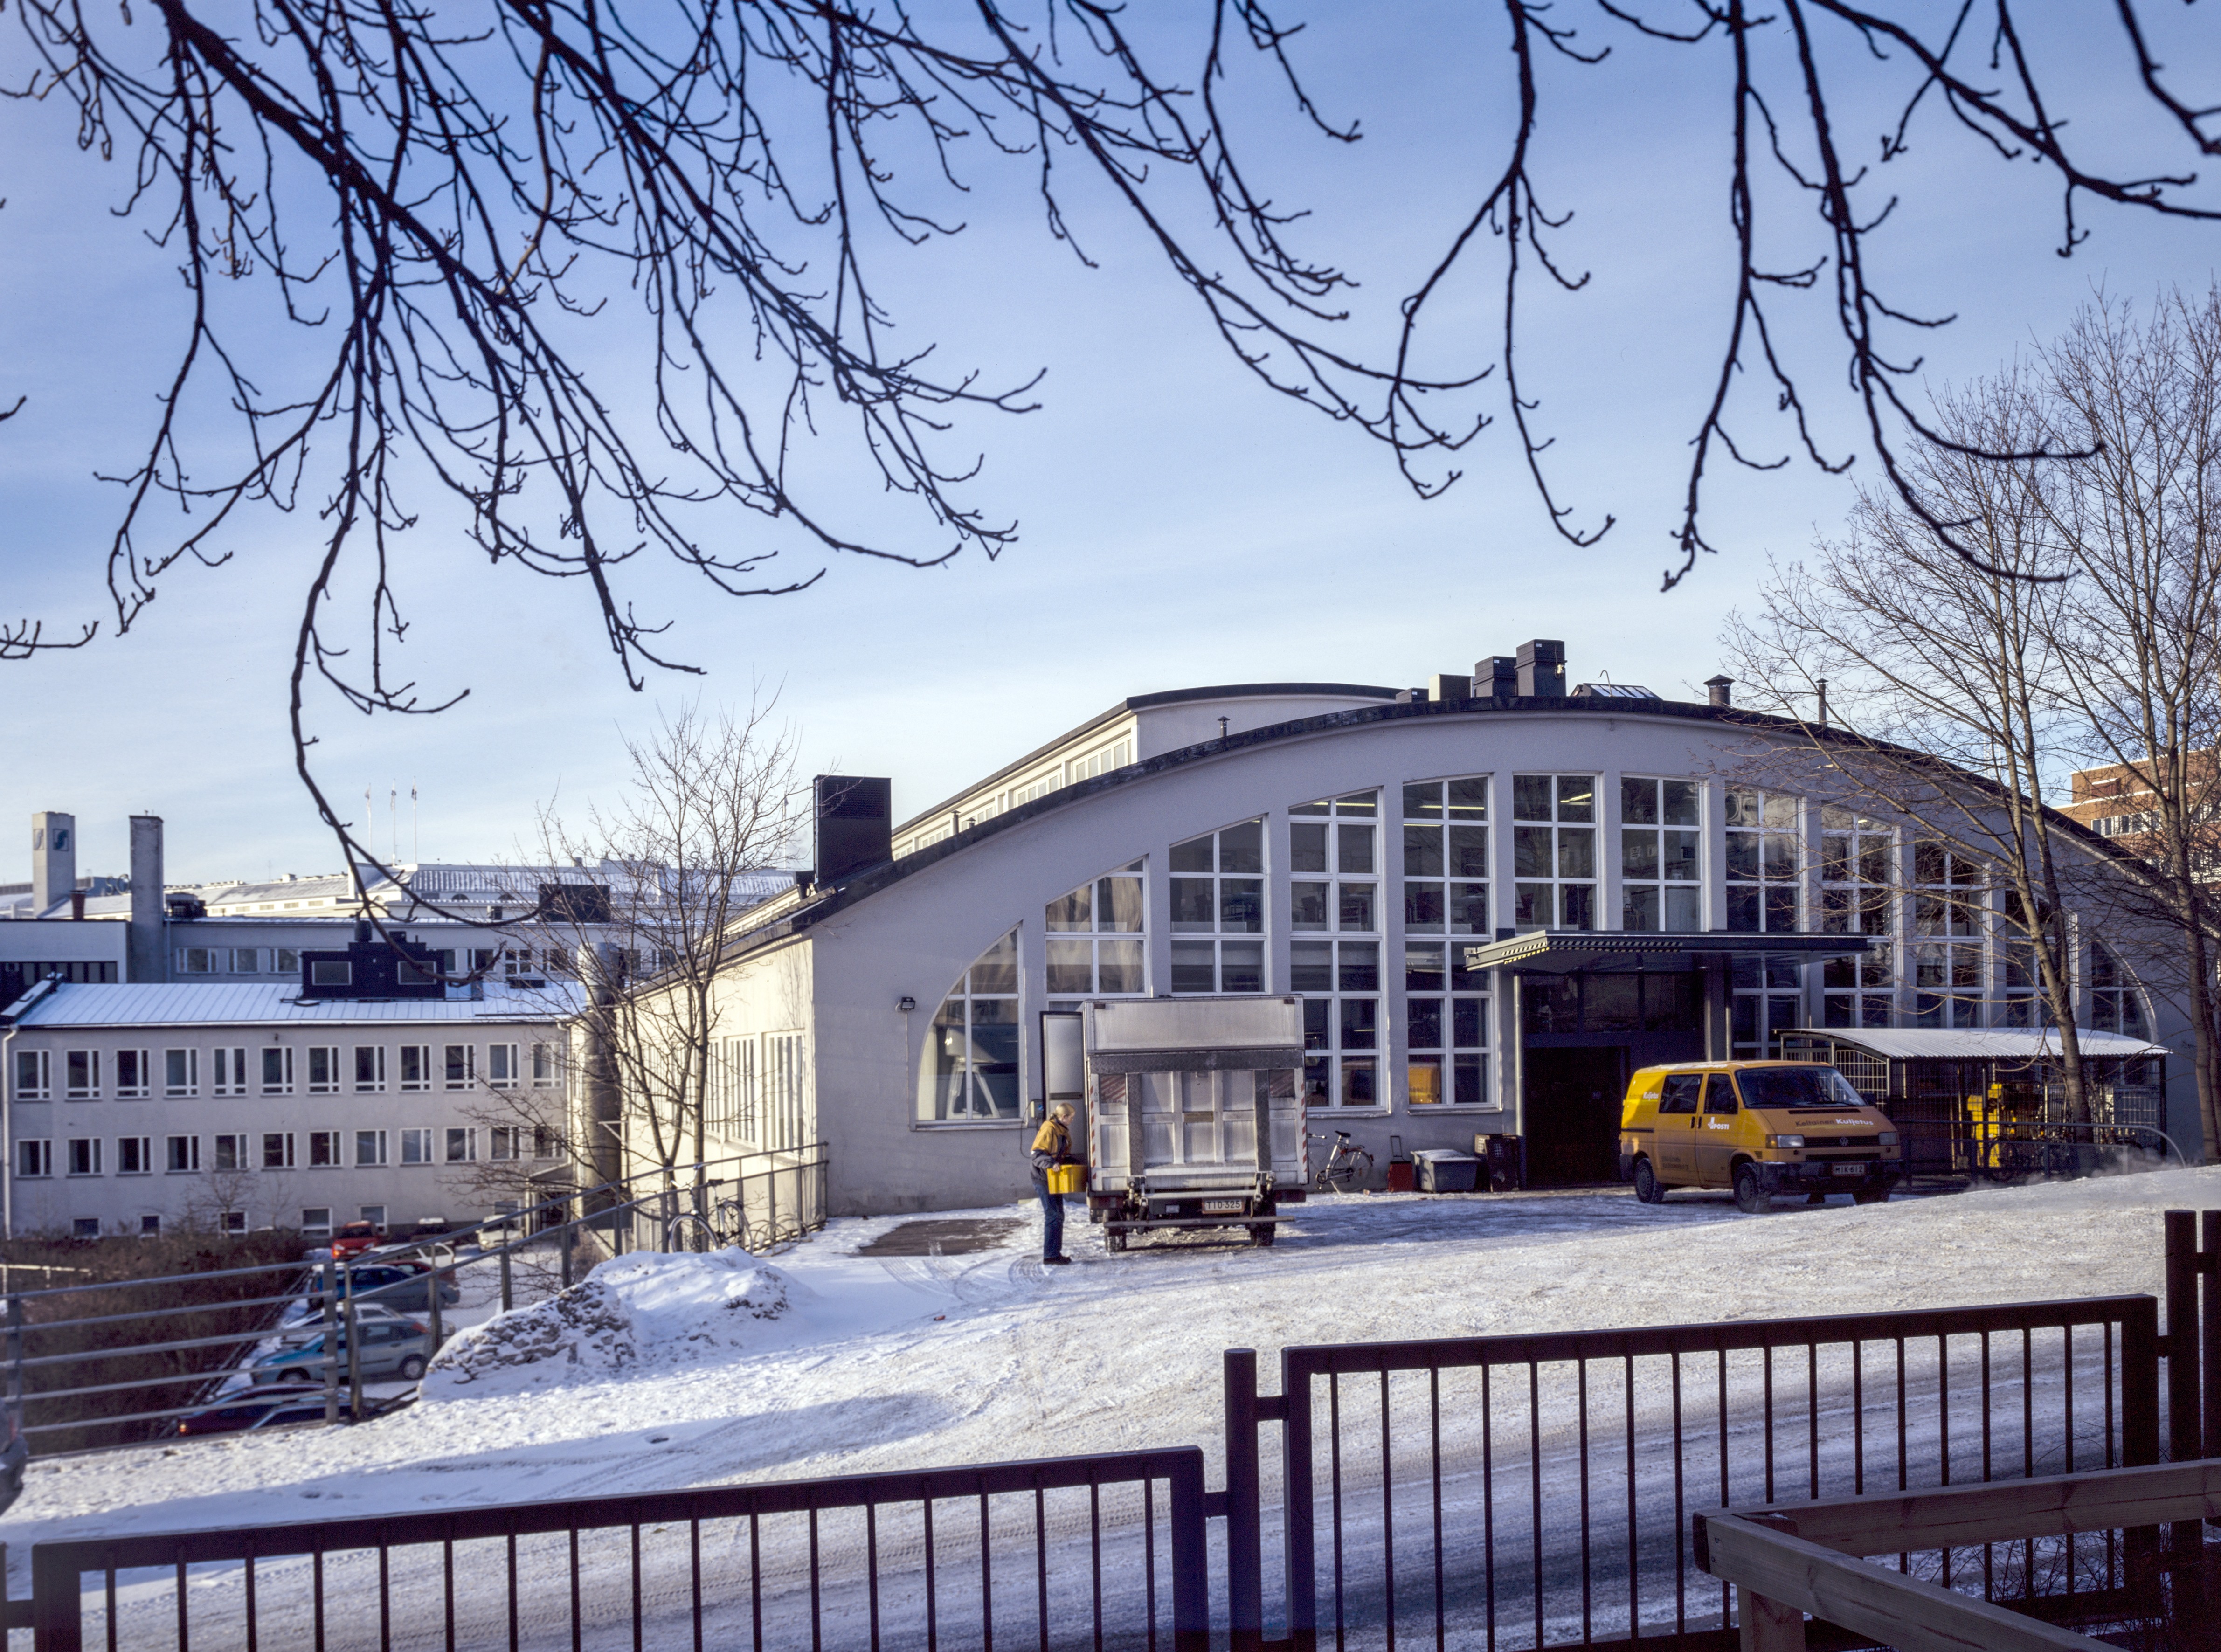 Roineentie 10 - Sturenkatu 21 - Teollisuuskatu 5. Rakennuksen yläkerrassa toimii posti 00510 Helsinki. Rakennus on entinen Oy Volvo Auto Ab:n autoliikkeen toimisto- ja varastorakennusrakennus.